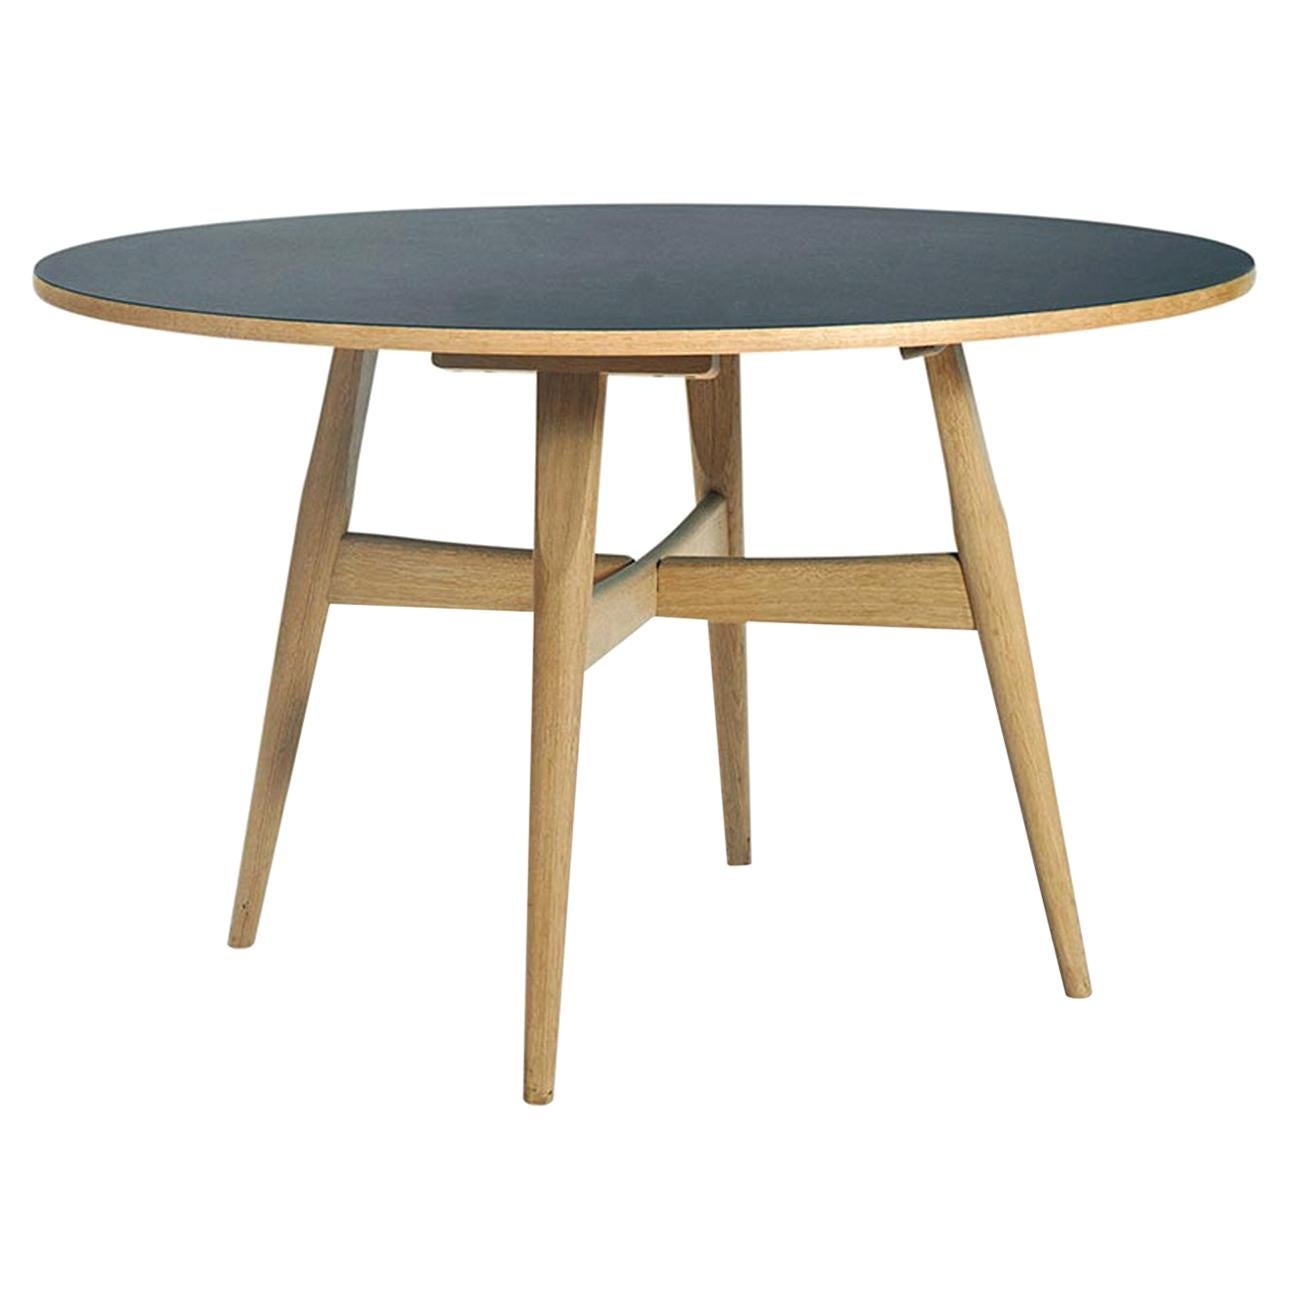 Hans Wegner GE-526 Dining Table, Veneered Table Top in Oak with Legs in Oak